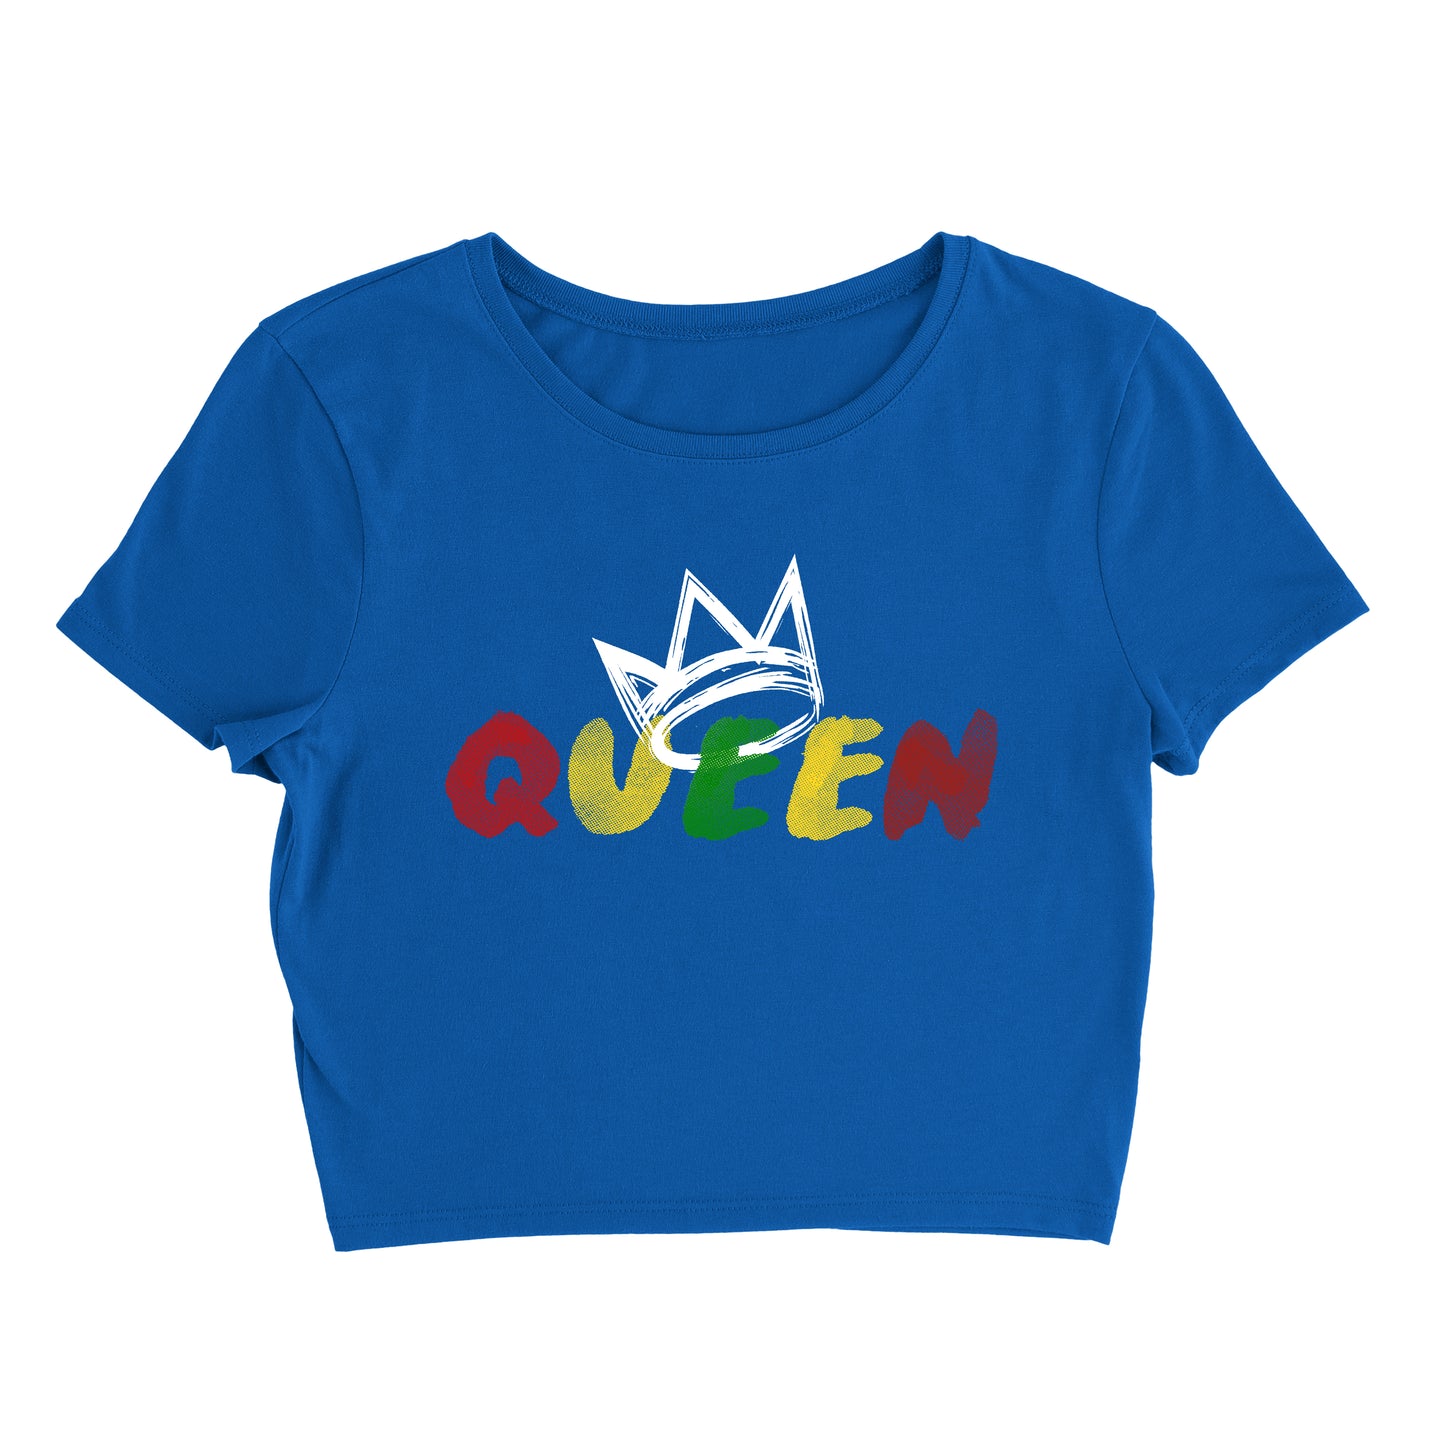 Queen Originals Crop Top